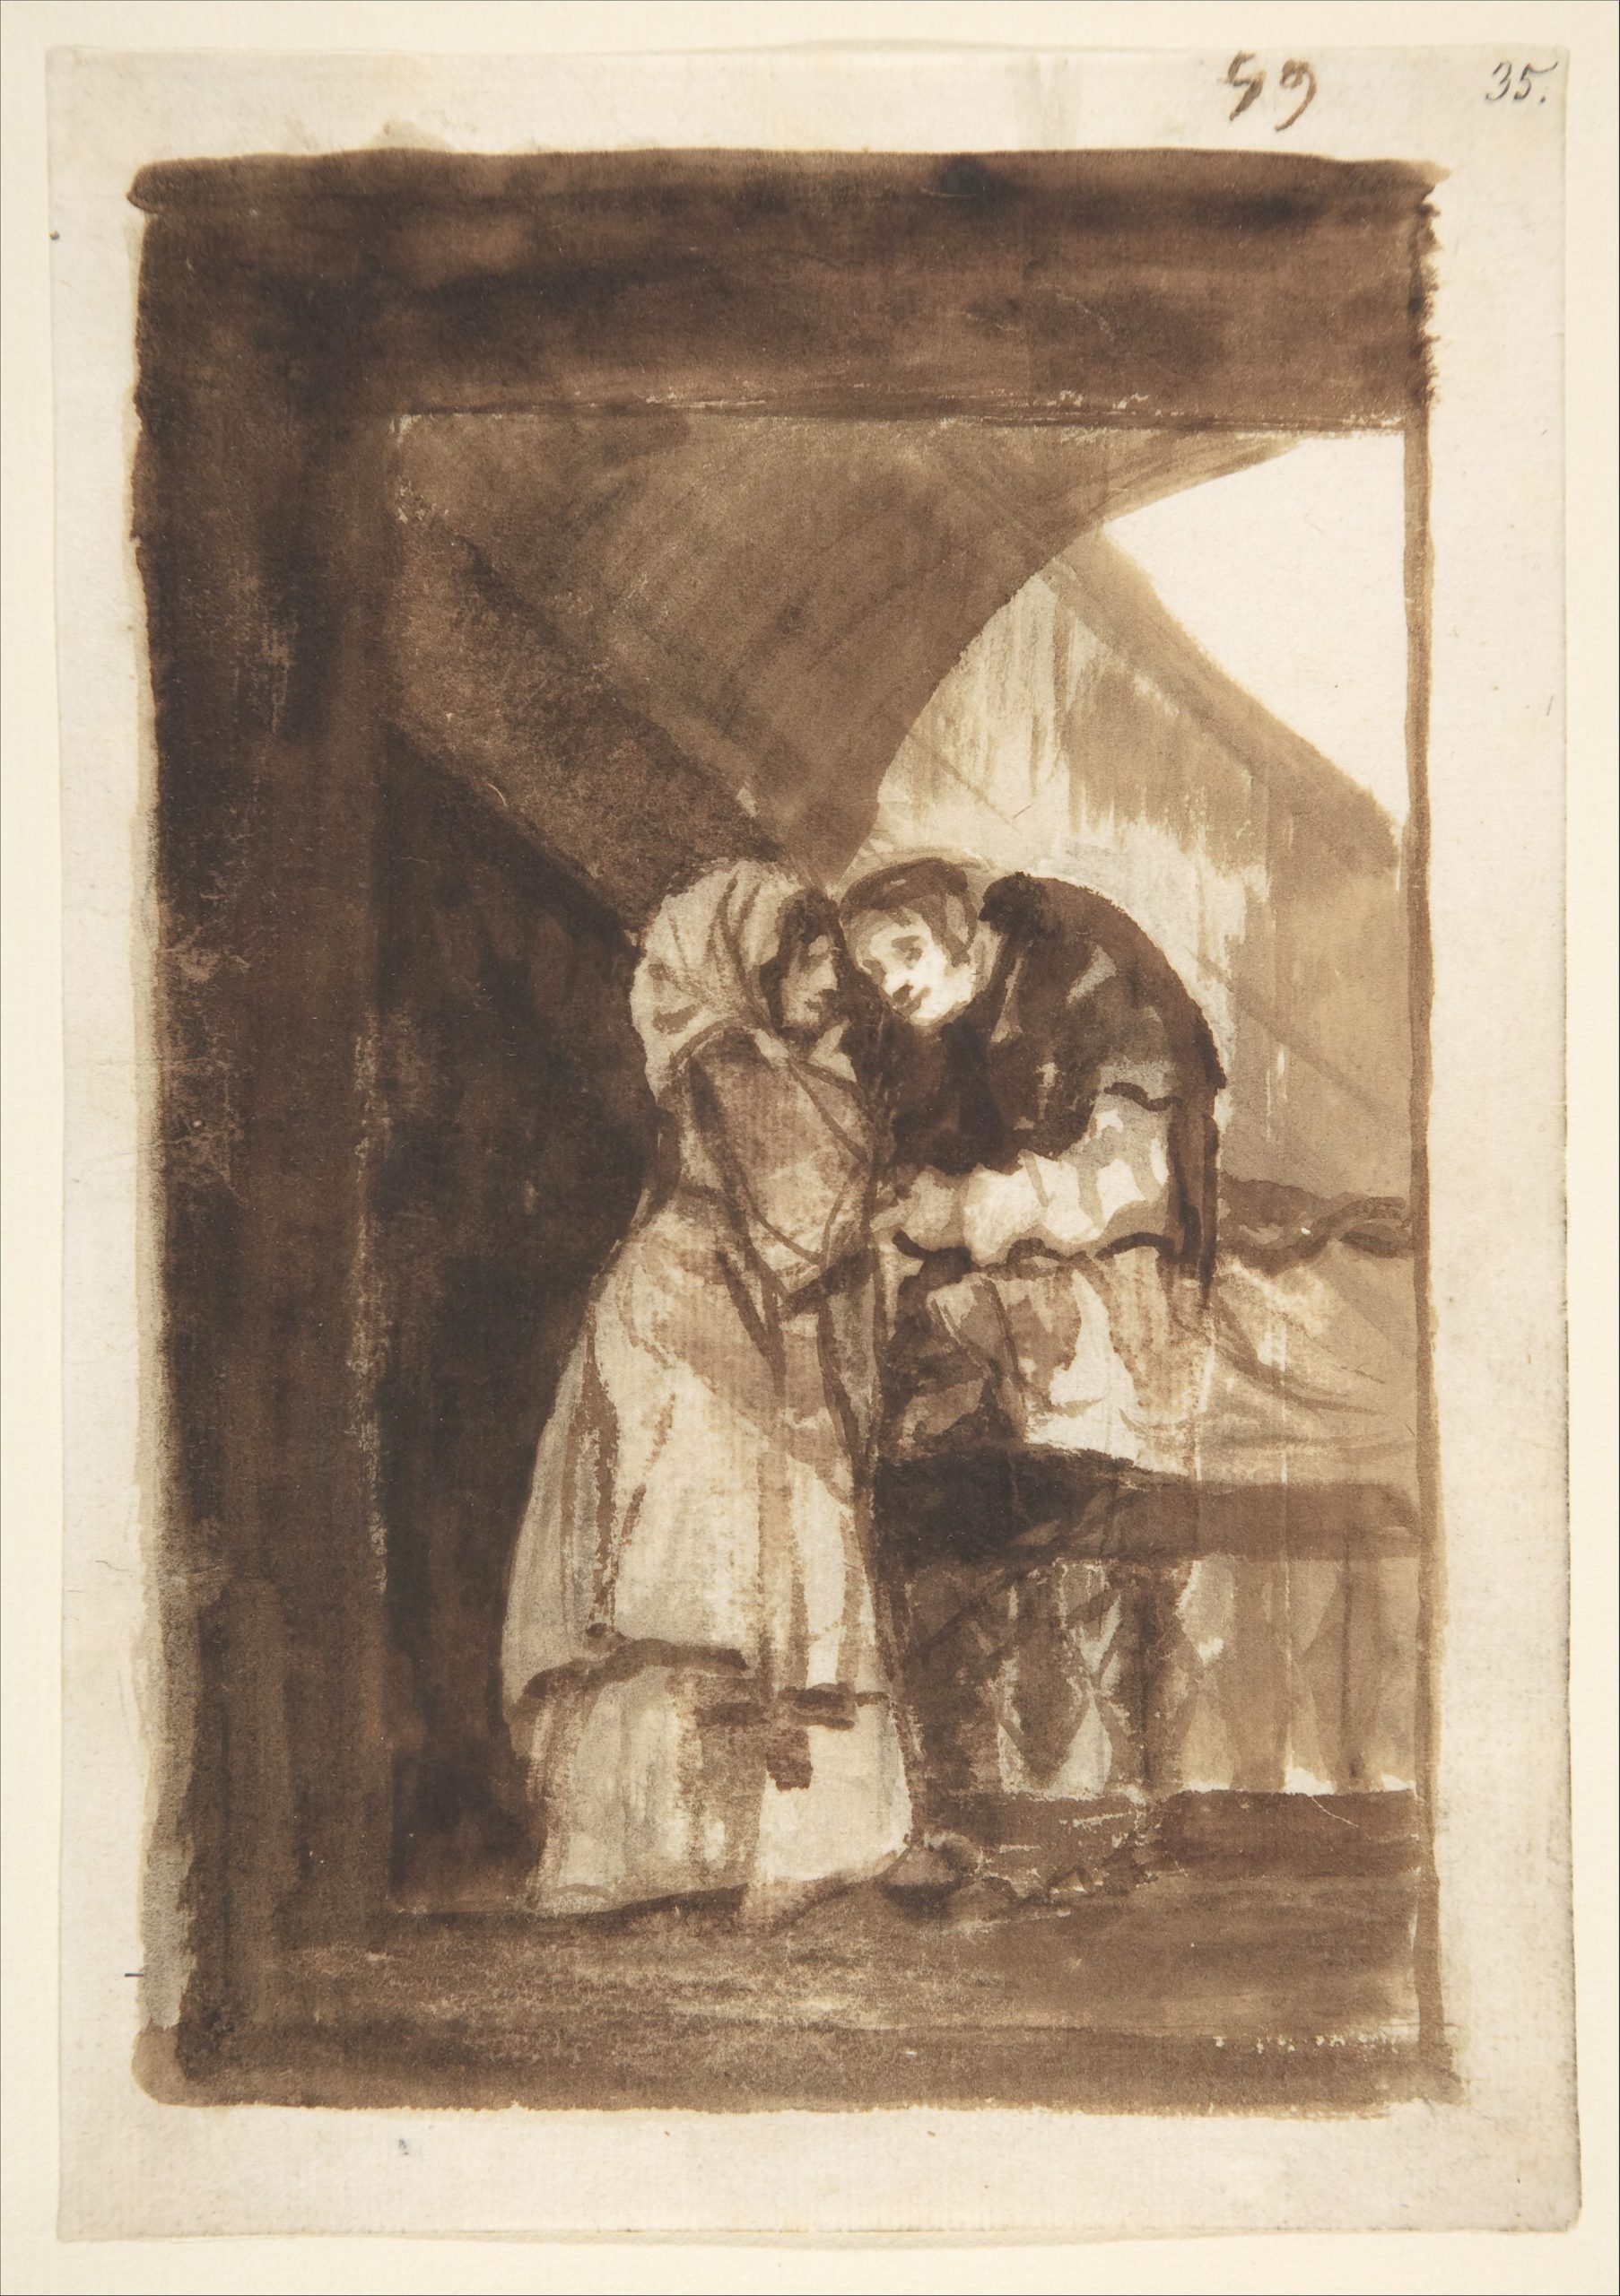 Image of Francisco de Goya, Una mujer susurrando a un sacerdote, 1812-23